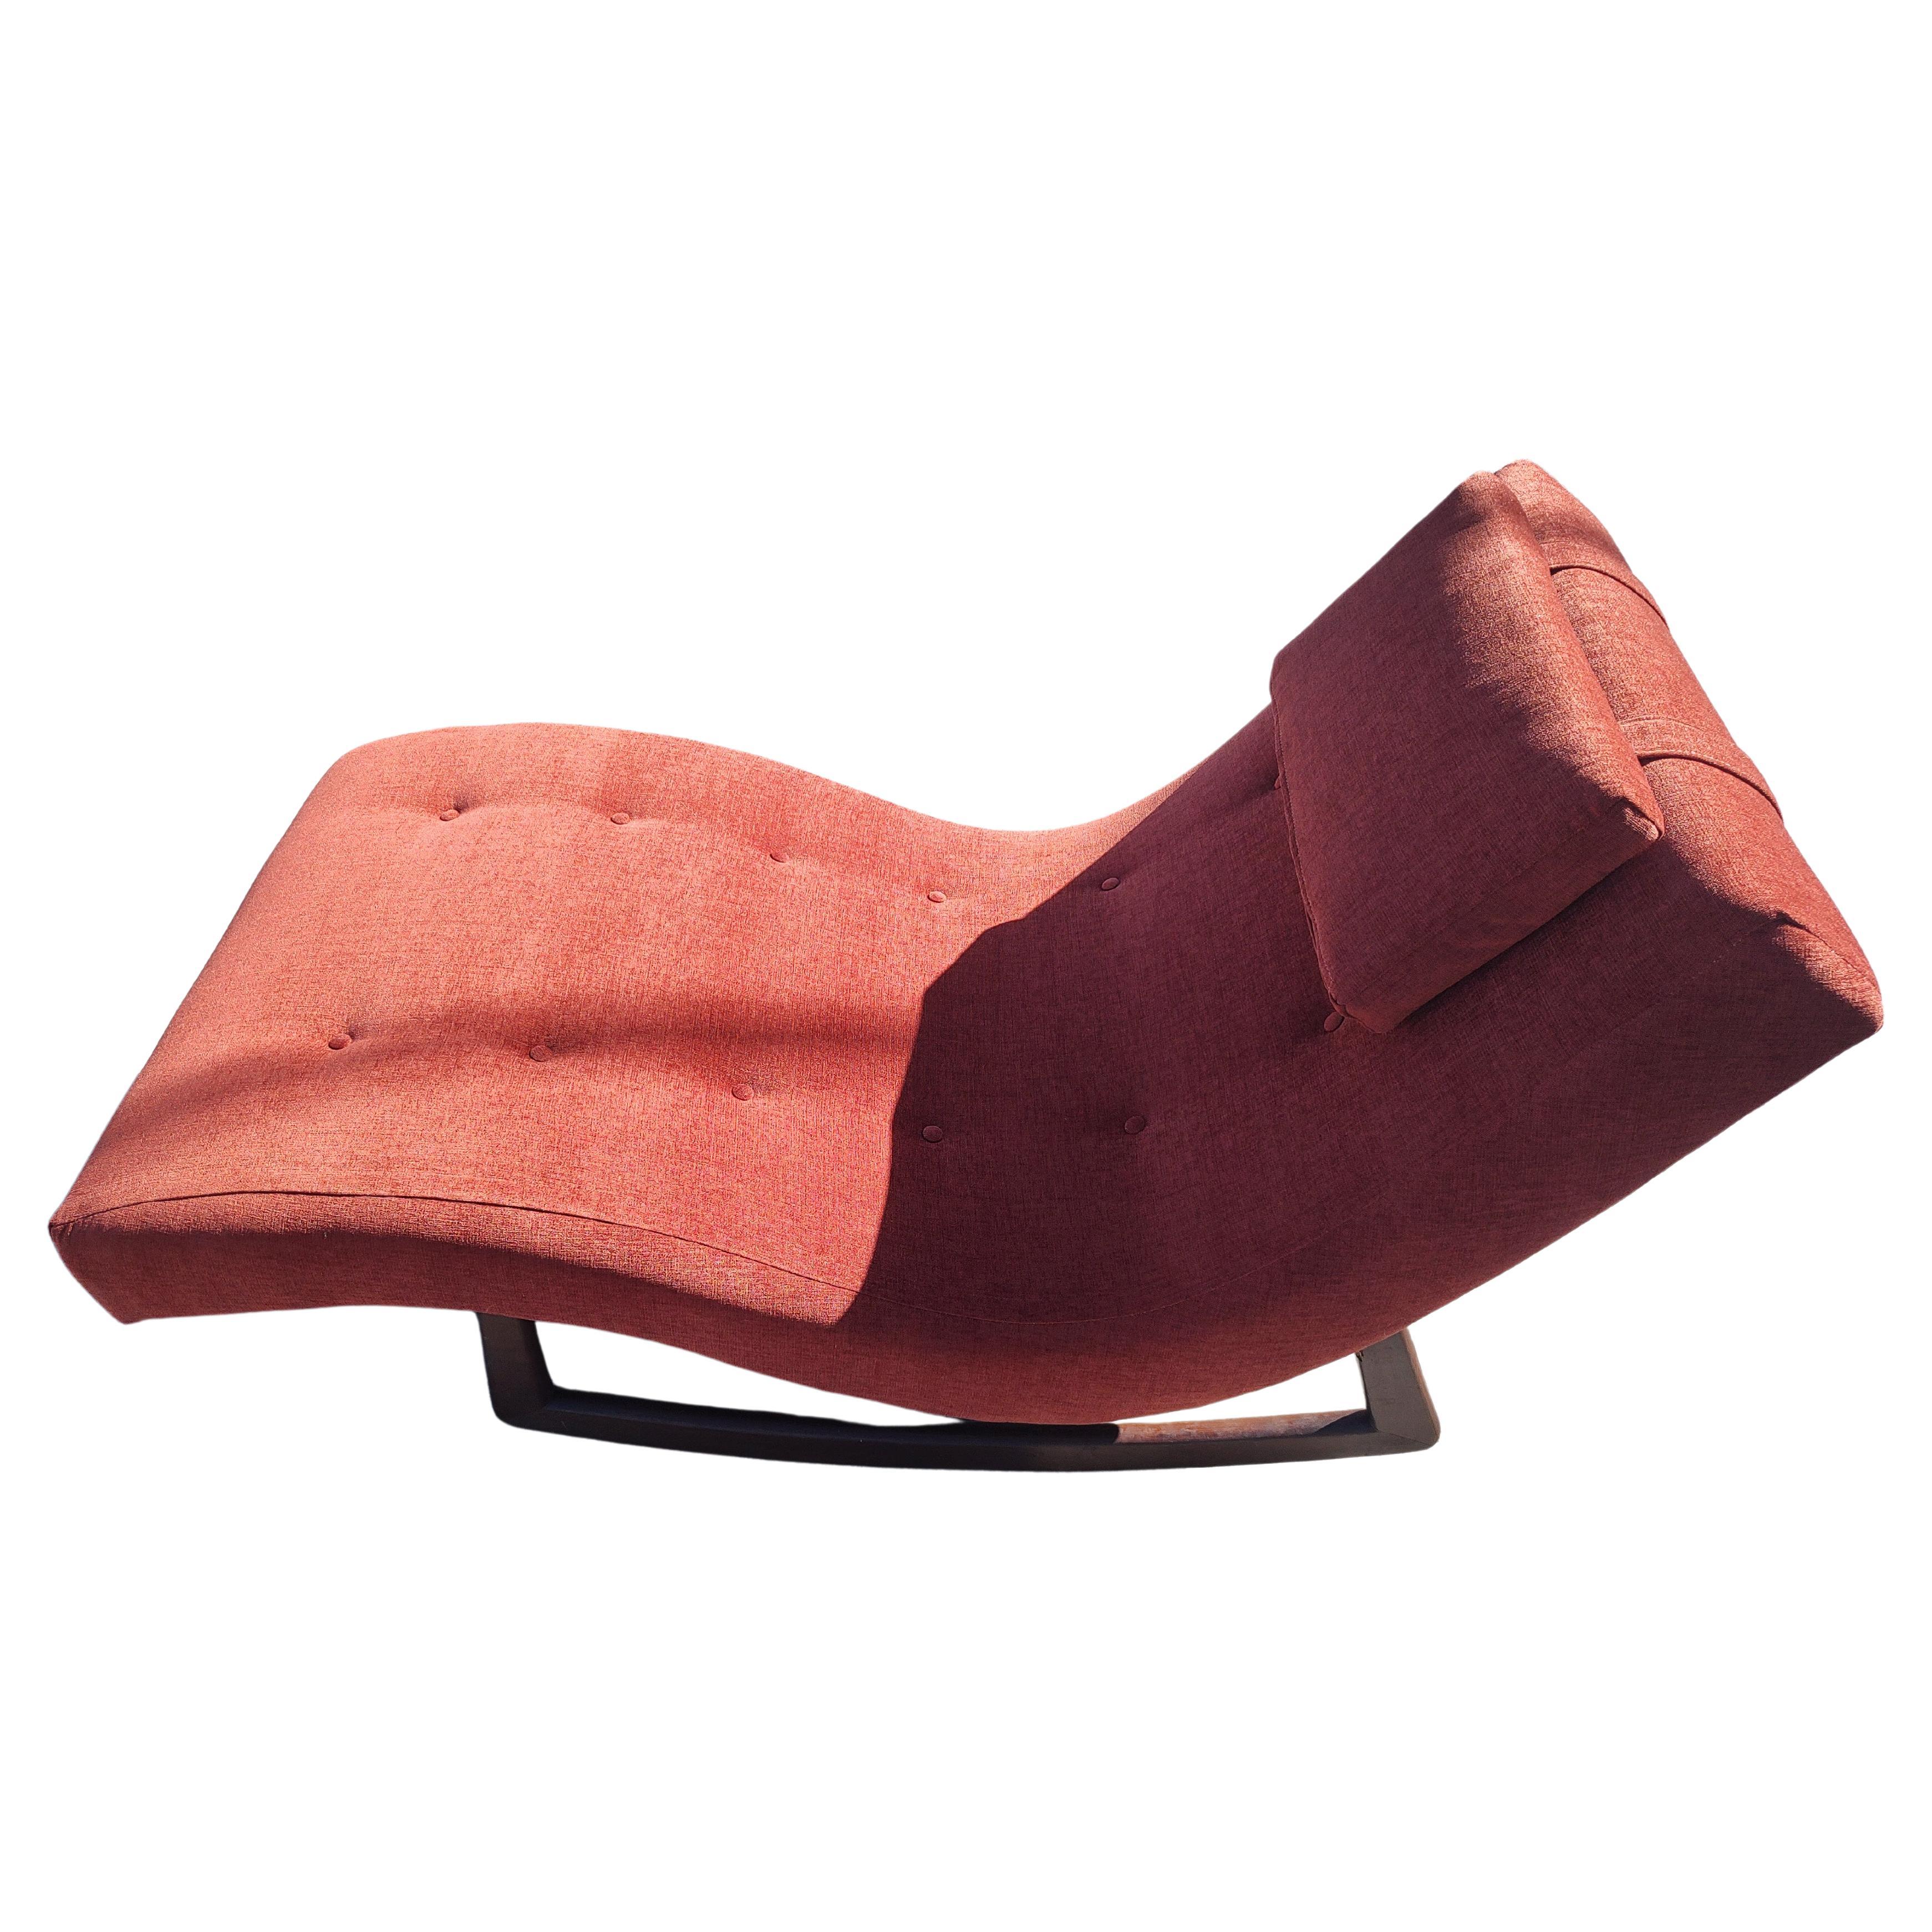 Fabelhafter Adrian Pearsall Wave Rocker Chaise Lounge Chair aus dem Jahr 1960 mit einem Gehäuse aus Walnussholz und komplett neu gepolstert mit einem weichen, strukturierten Boucle-ähnlichen Material. Eingebautes Kopfstützenkissen für zusätzlichen